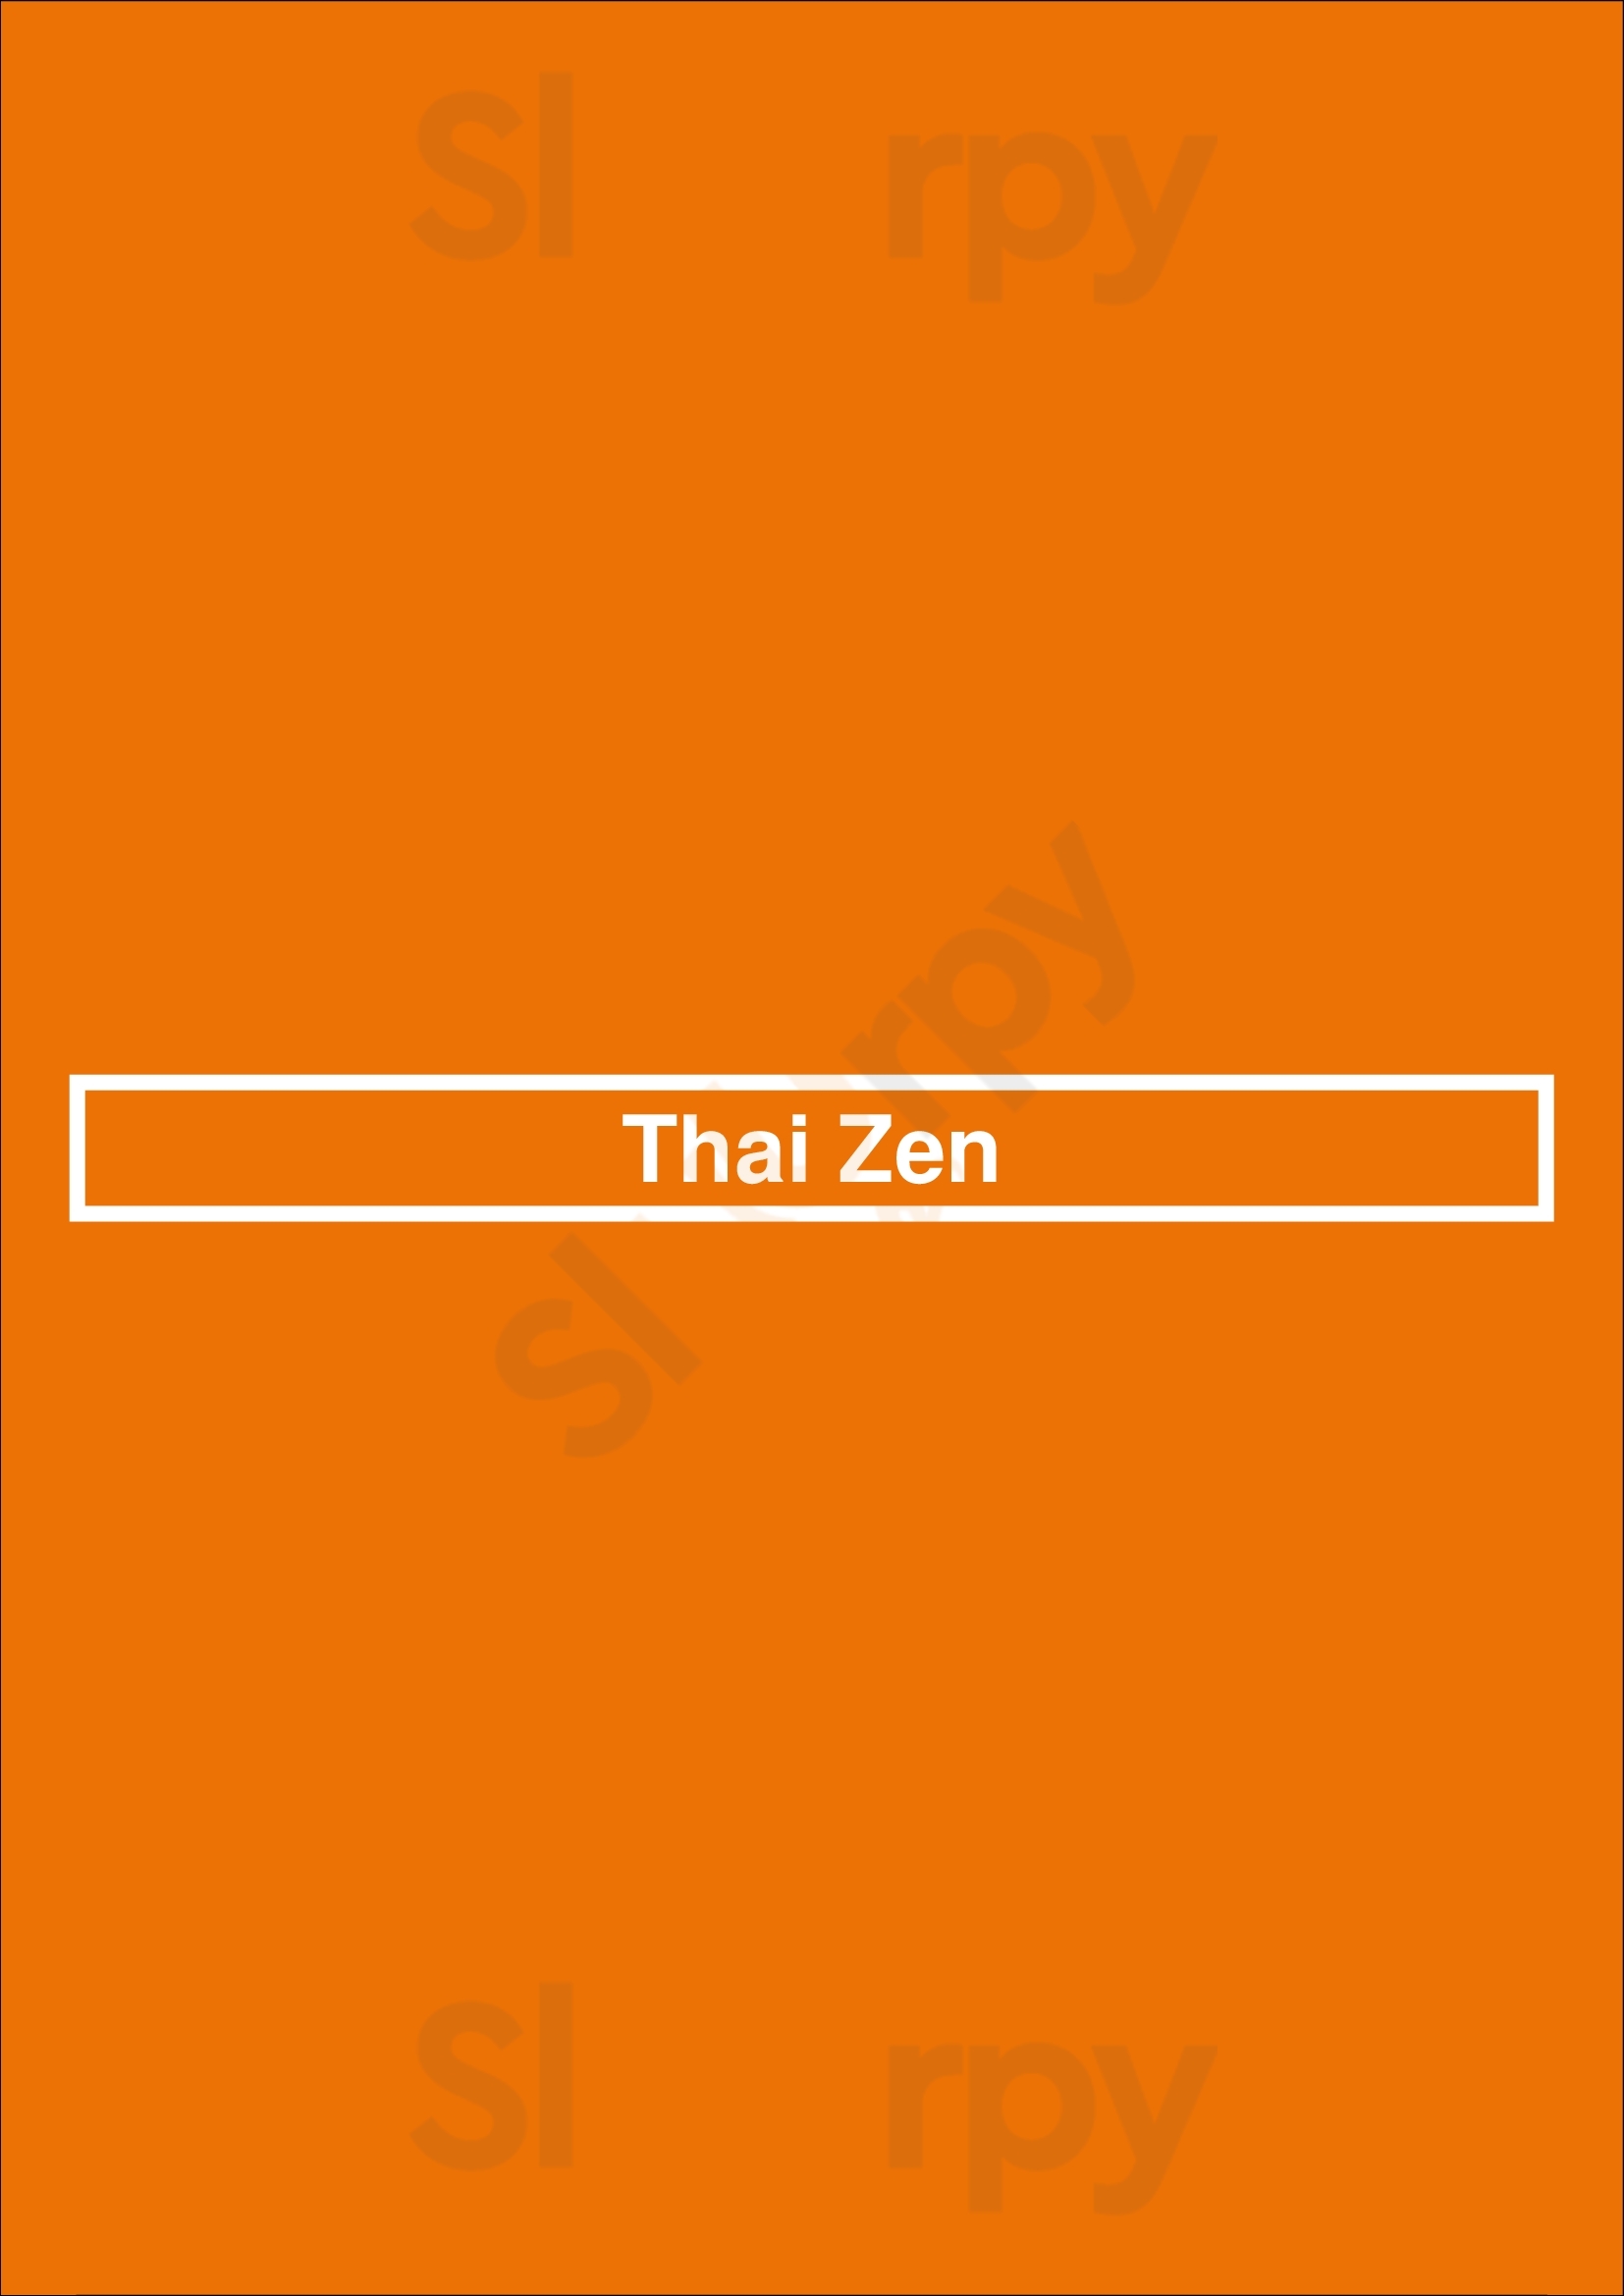 Thai Zen Bruges Menu - 1